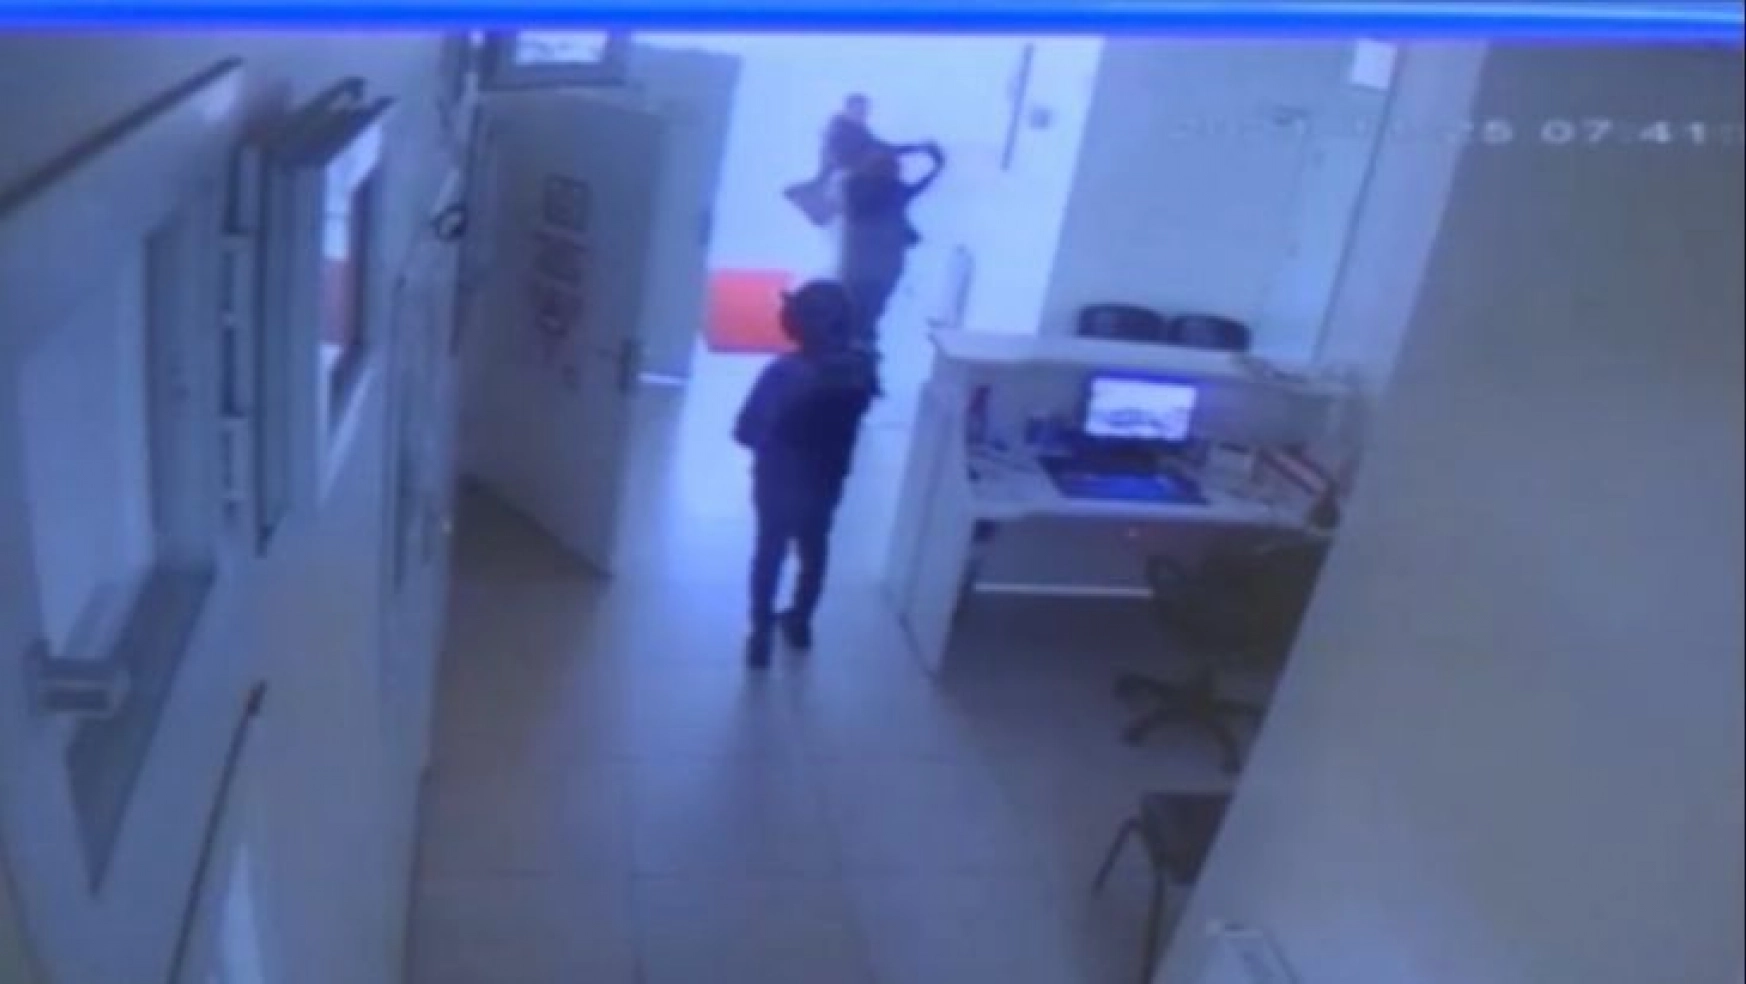 Doktoru bıçakla yaralayan kadın, Adana Ruh Sağlığı Hastanesine sevk edildi